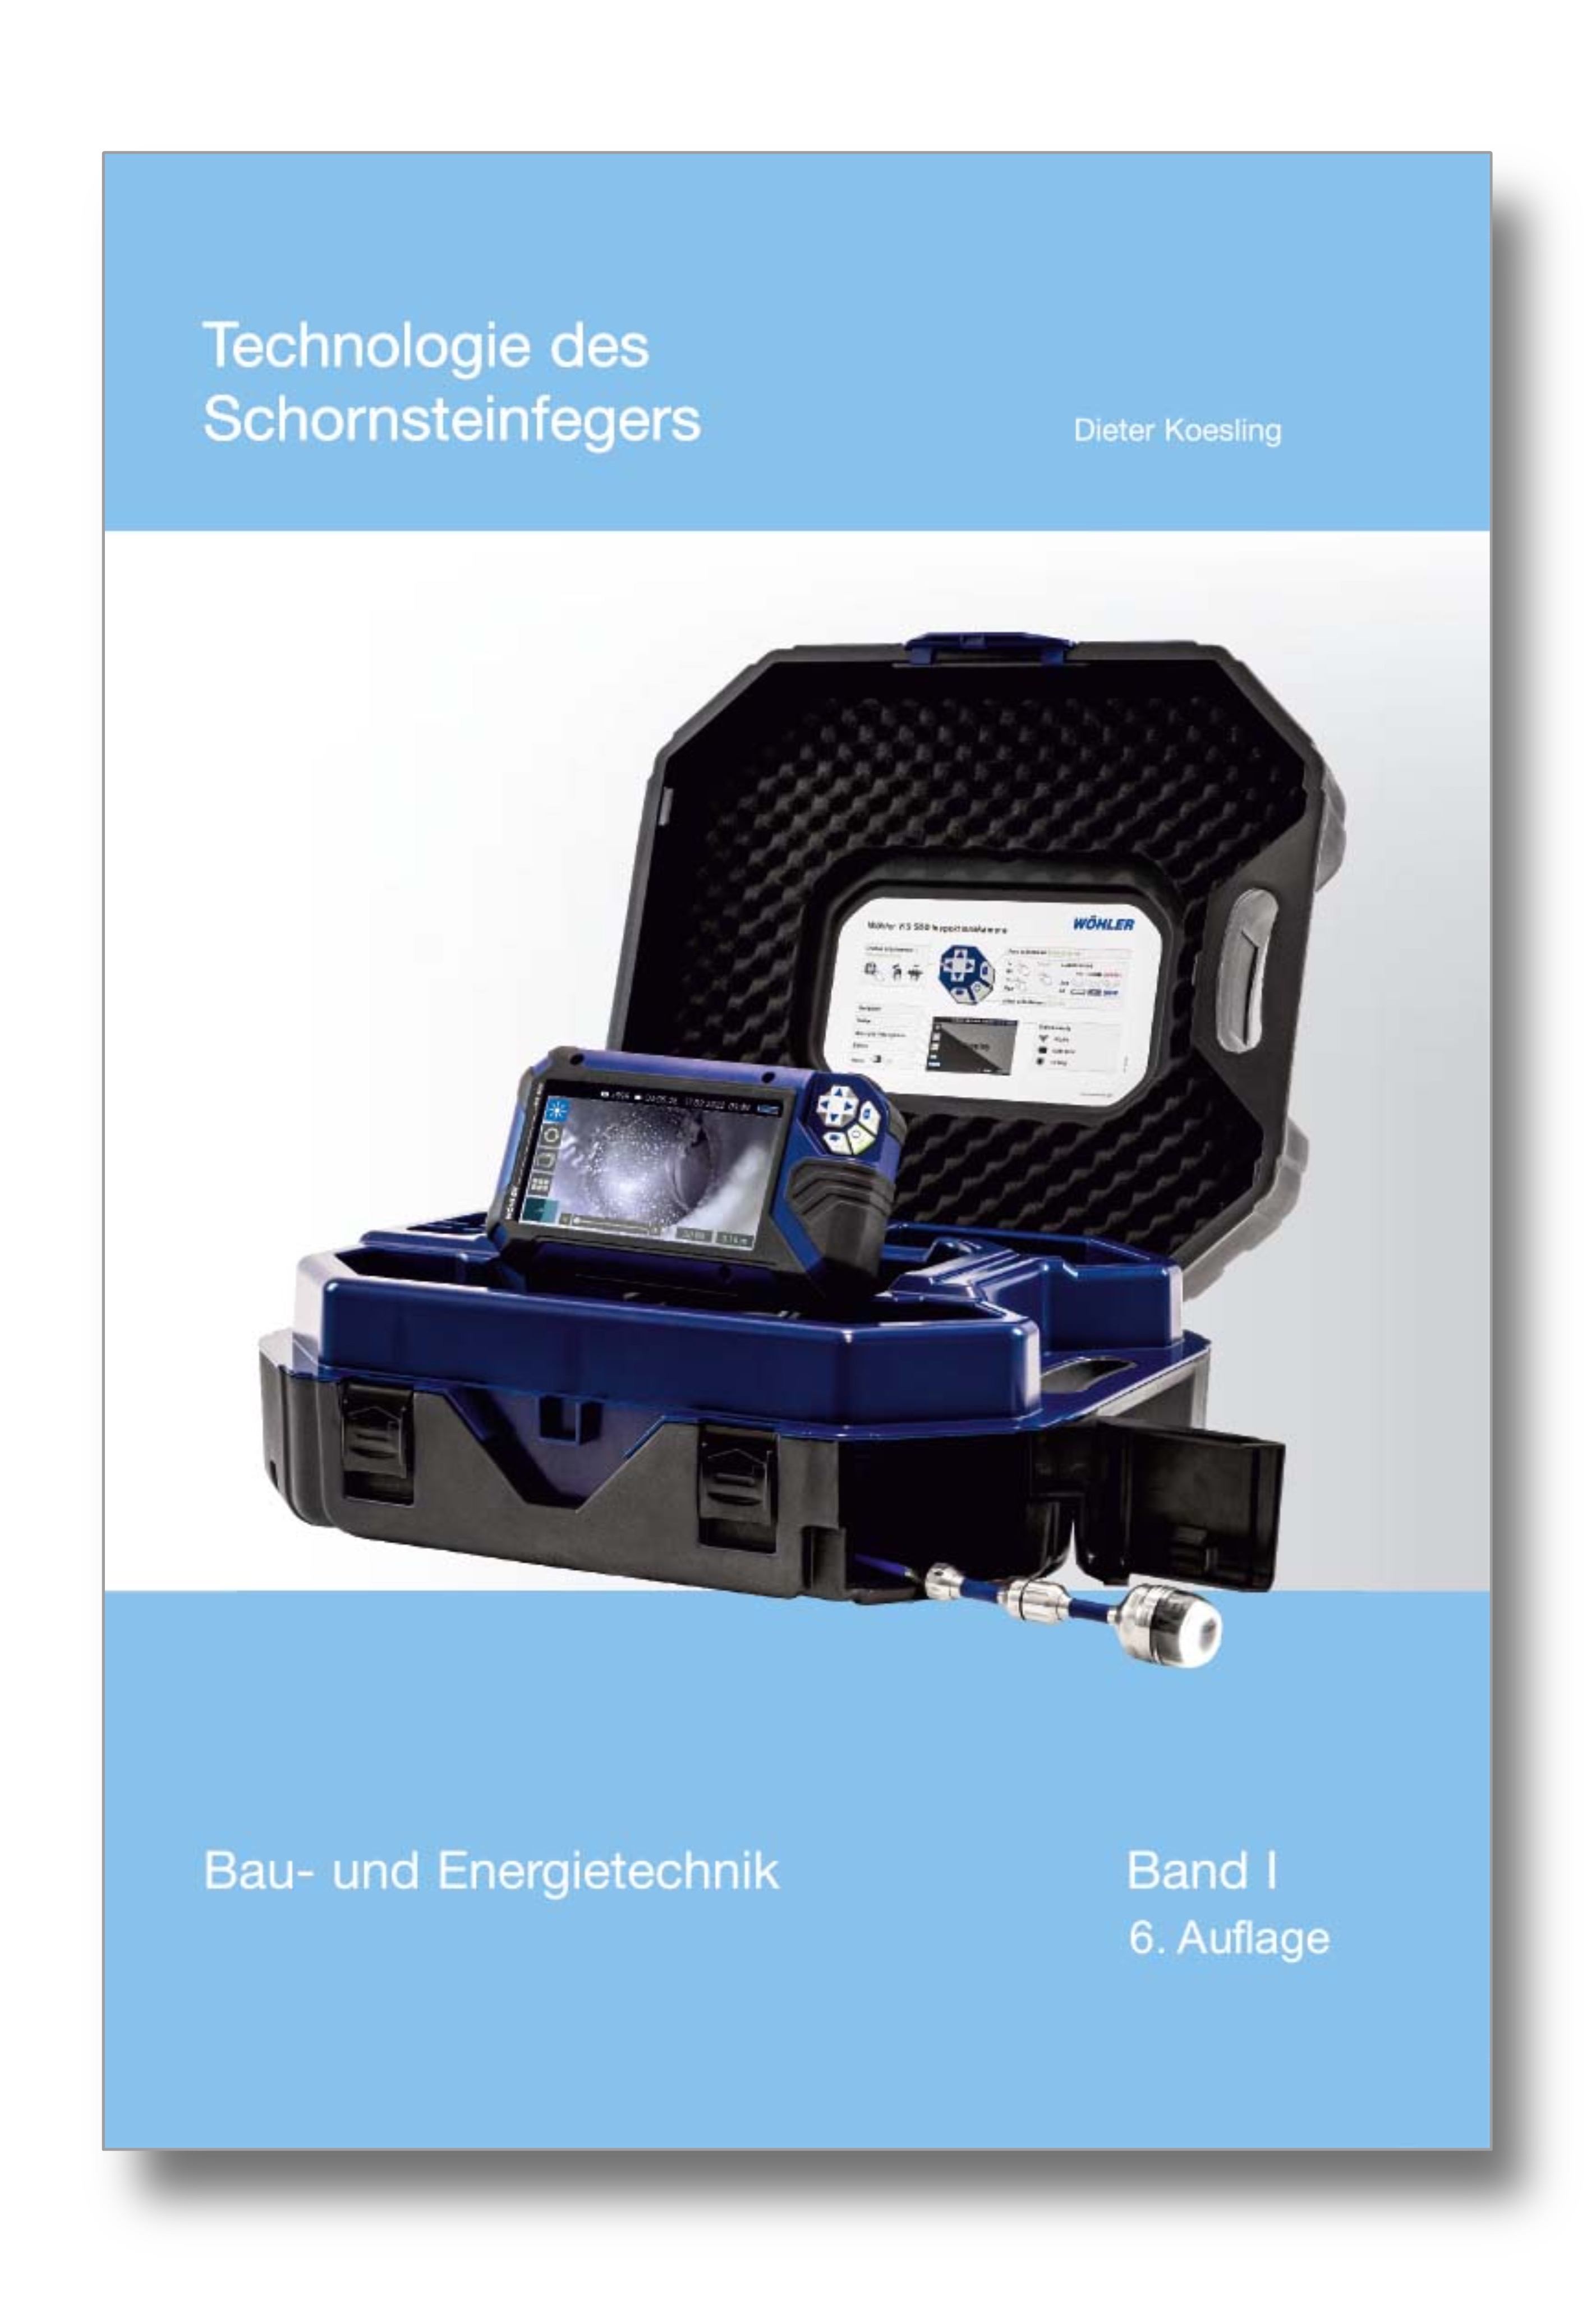 Technologie des Schornsteinfegers - Band I - Bau- und Energietechnik, 6. Auflage